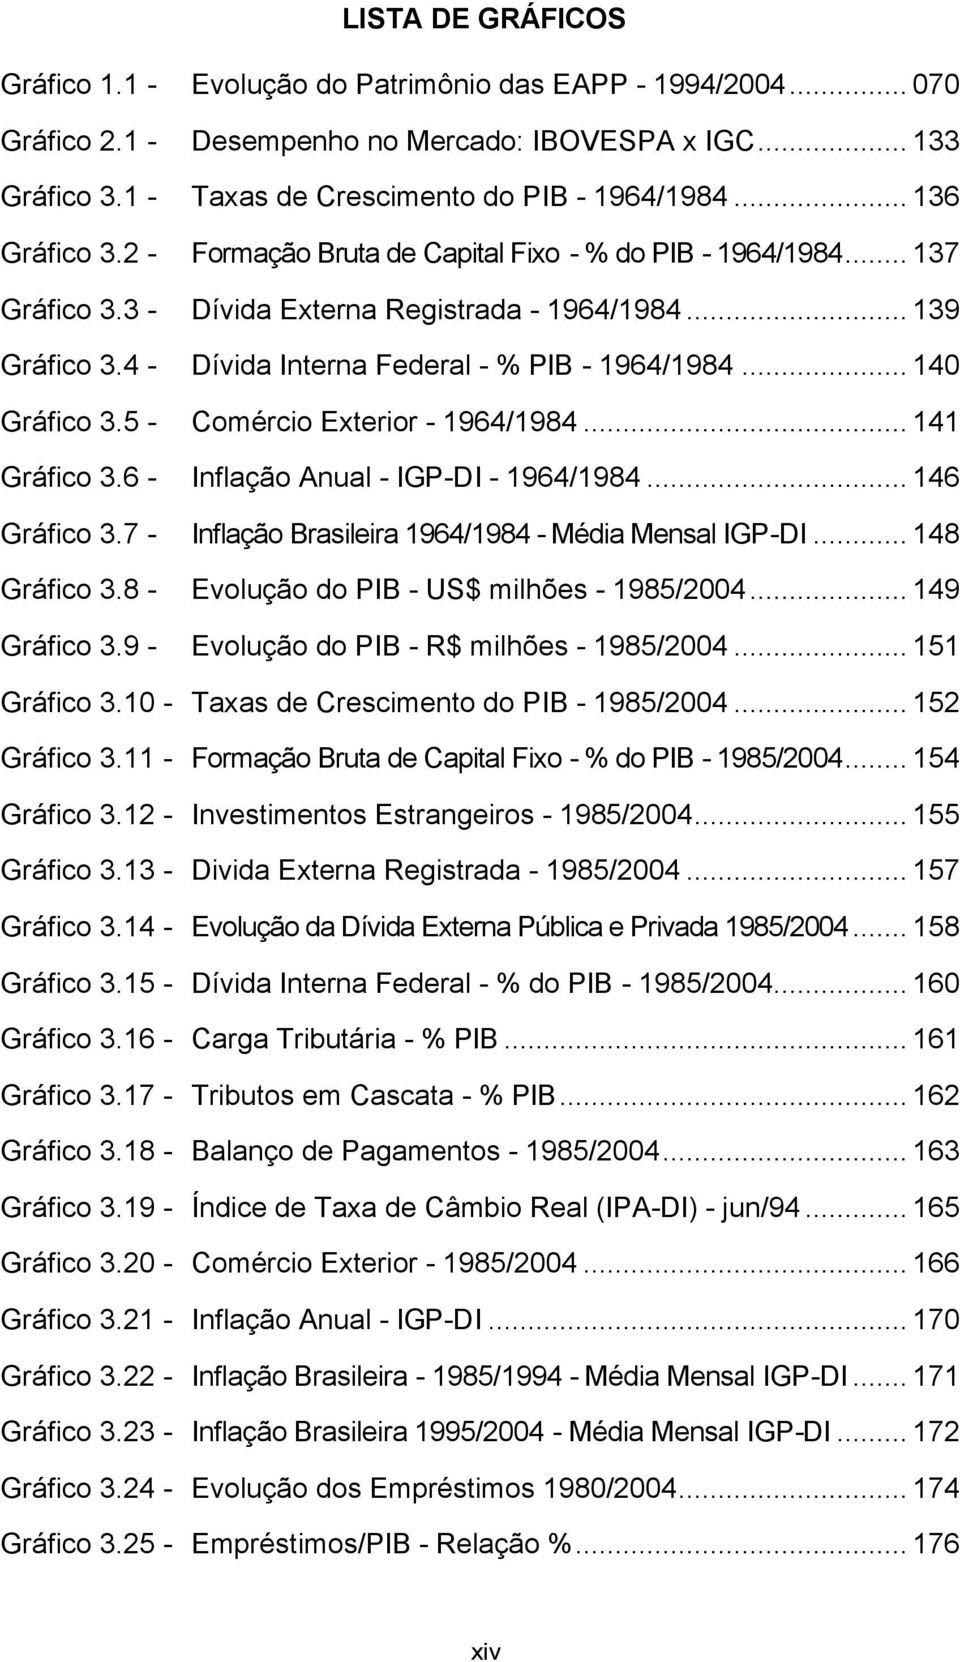 .. 140 Gráfico 3.5 - Comércio Exterior - 1964/1984... 141 Gráfico 3.6 - Inflação Anual - IGP-DI - 1964/1984... 146 Gráfico 3.7 - Inflação Brasileira 1964/1984 - Média Mensal IGP-DI... 148 Gráfico 3.